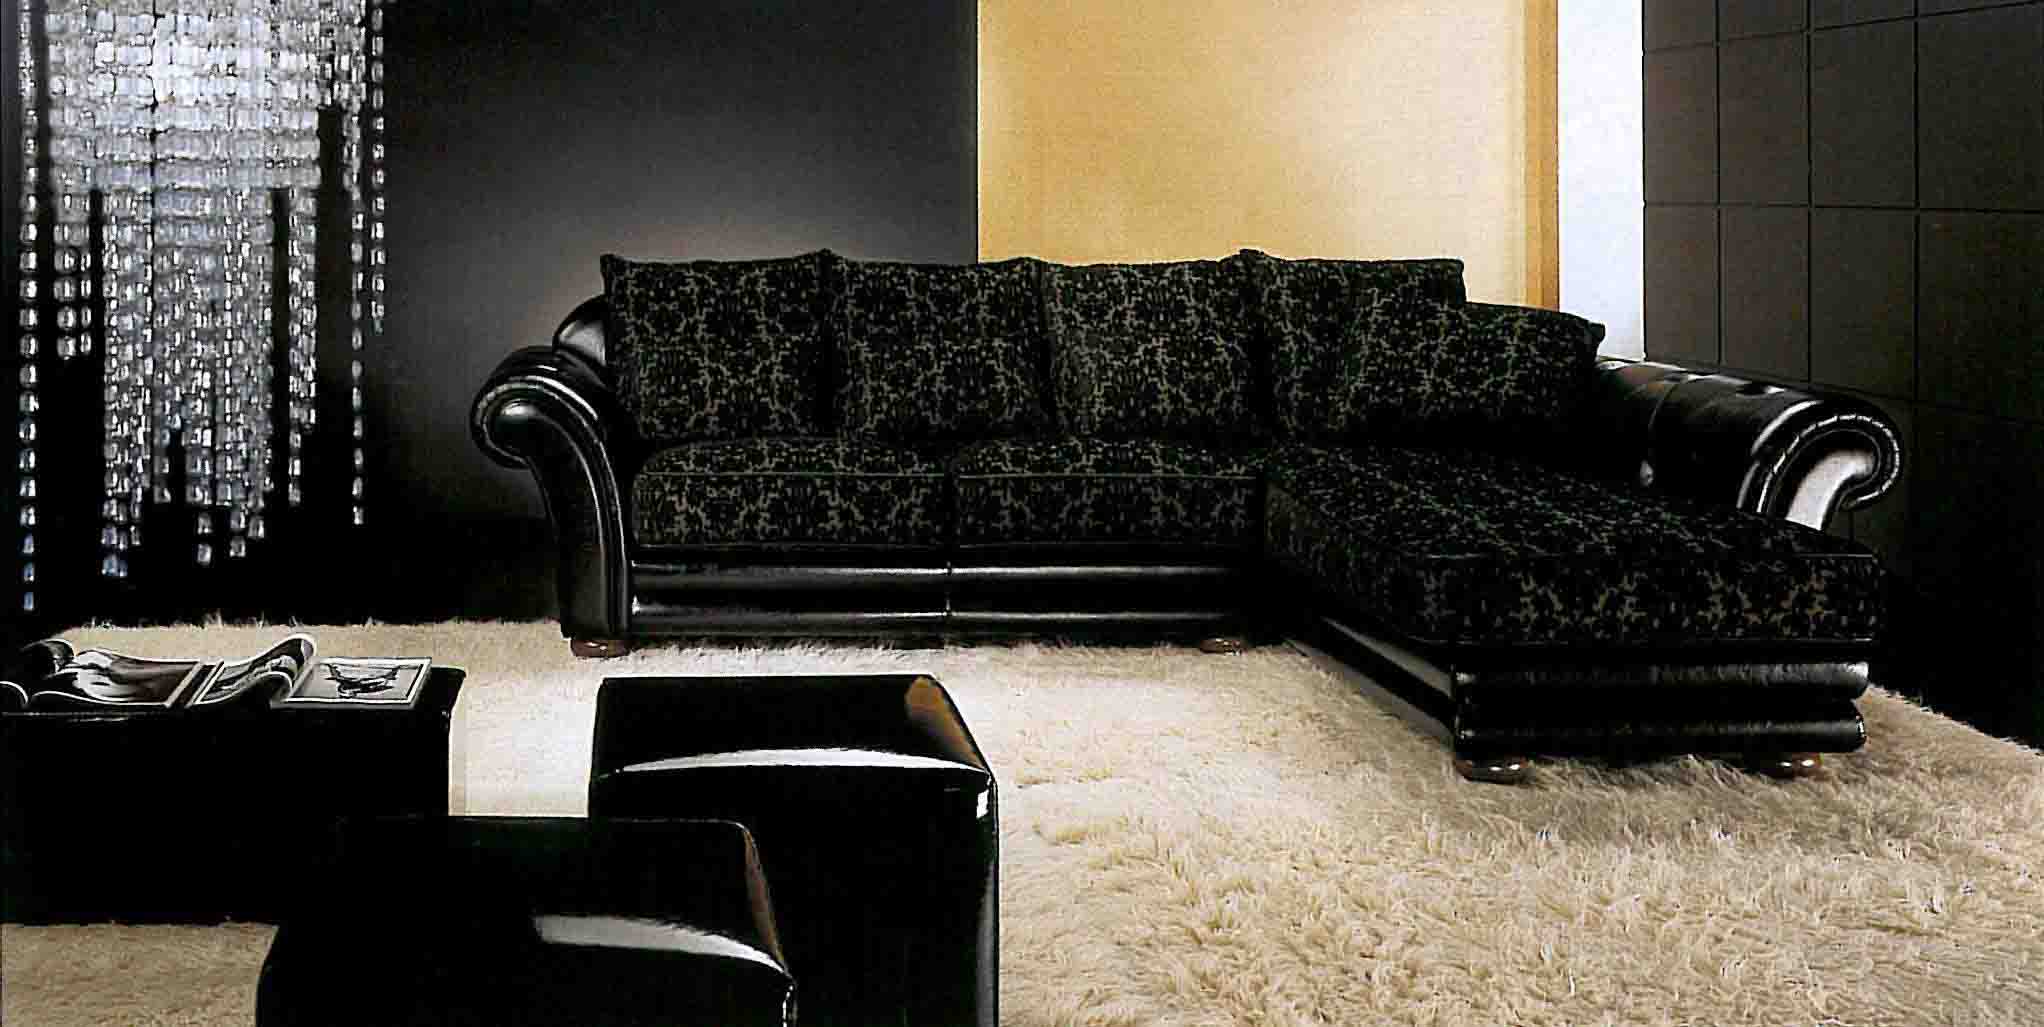 Угловой диван в интерьере